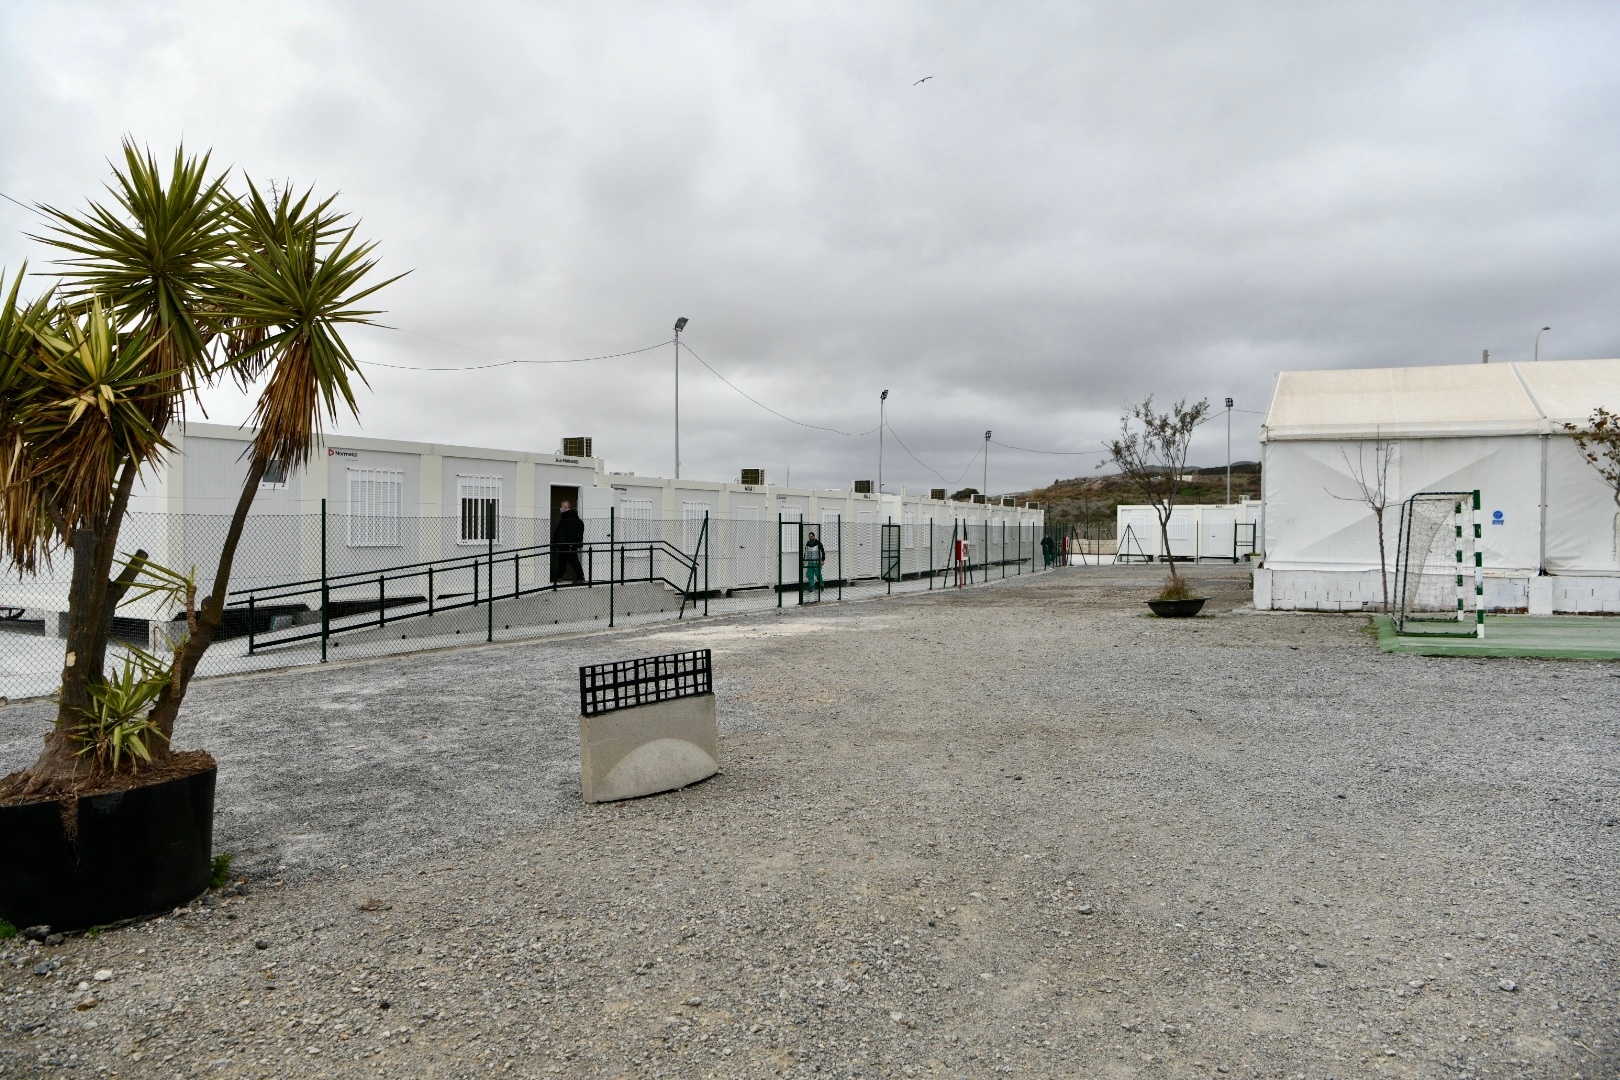 Vista general de las aulas modulares instaladas para que los menores acogidos en Piniers puedan comenzar sus clases, a 17 de diciembre de 2021, en Ceuta (España). (Foto: Antonio Sempere / Europa Press)